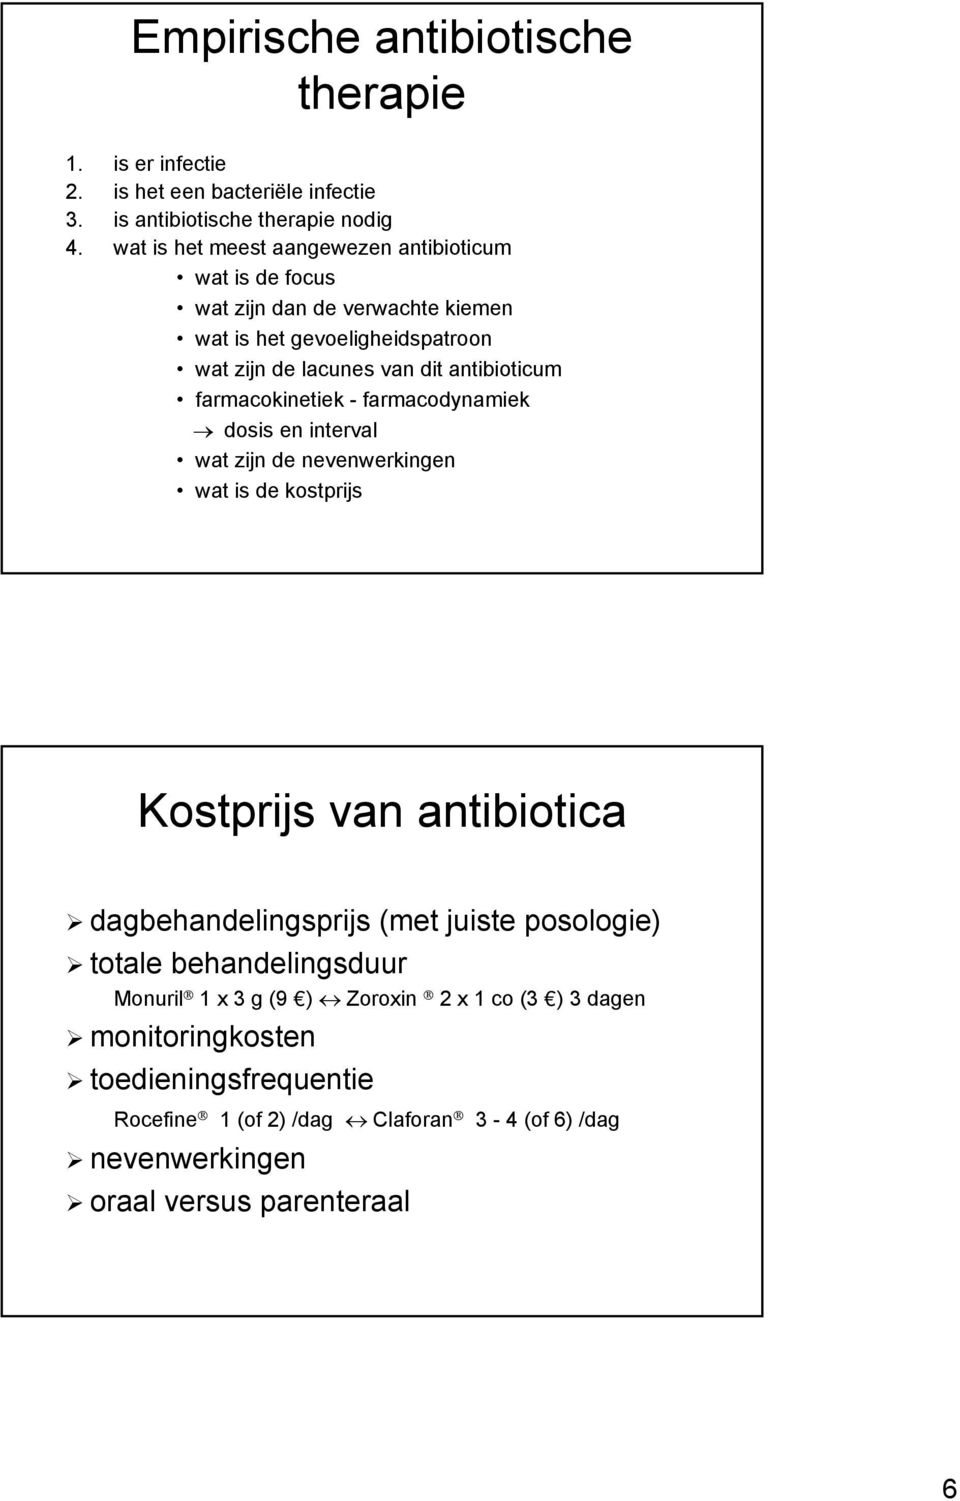 farmacokinetiek - farmacodynamiek dosis en interval wat zijn de nevenwerkingen wat is de kostprijs Kostprijs van antibiotica dagbehandelingsprijs (met juiste